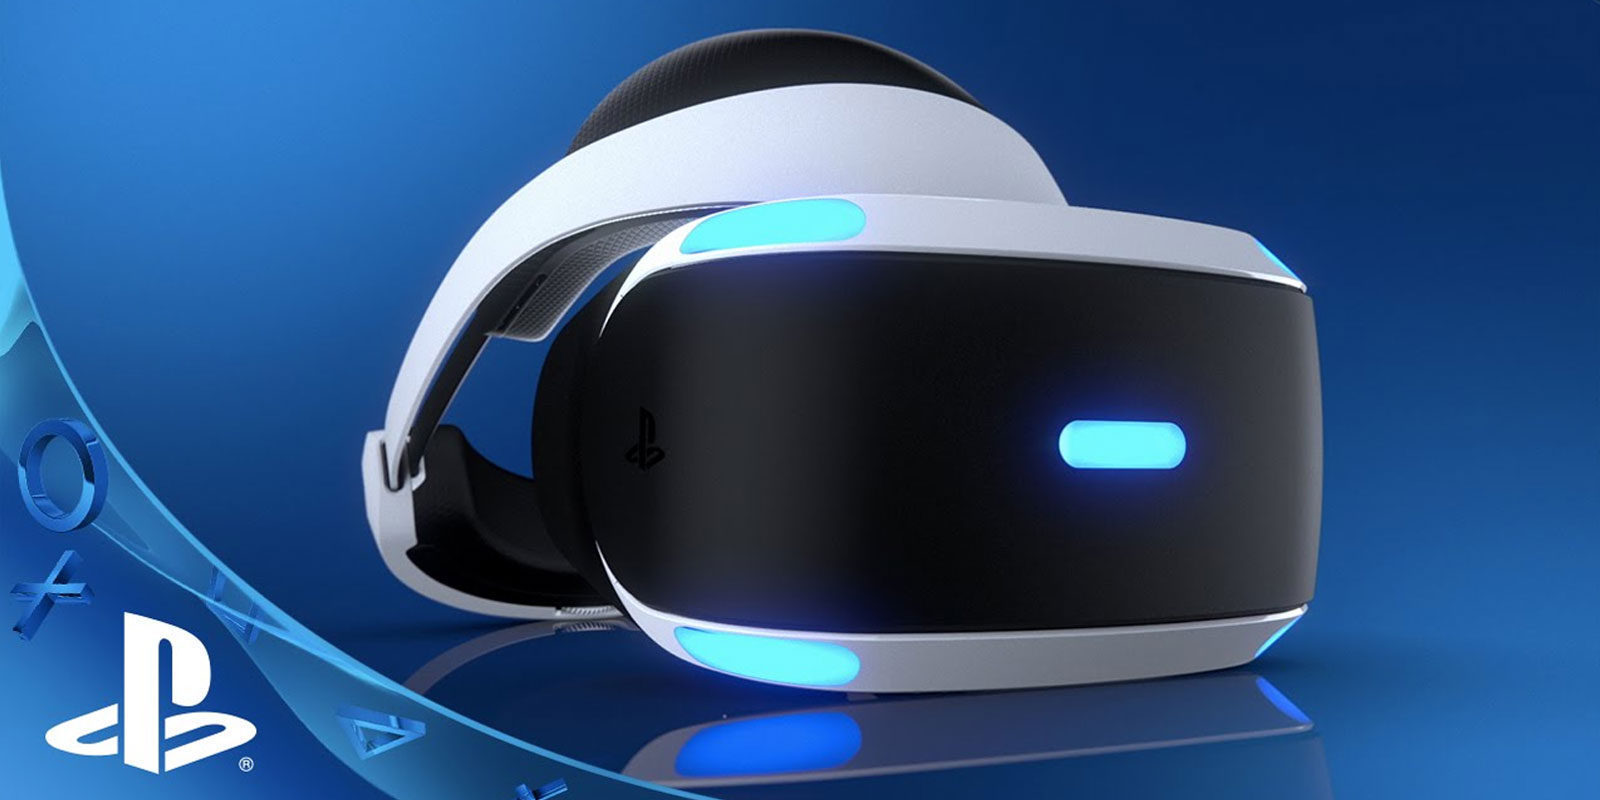 América latina no recibirá PlayStation VR hasta el año fiscal 2017